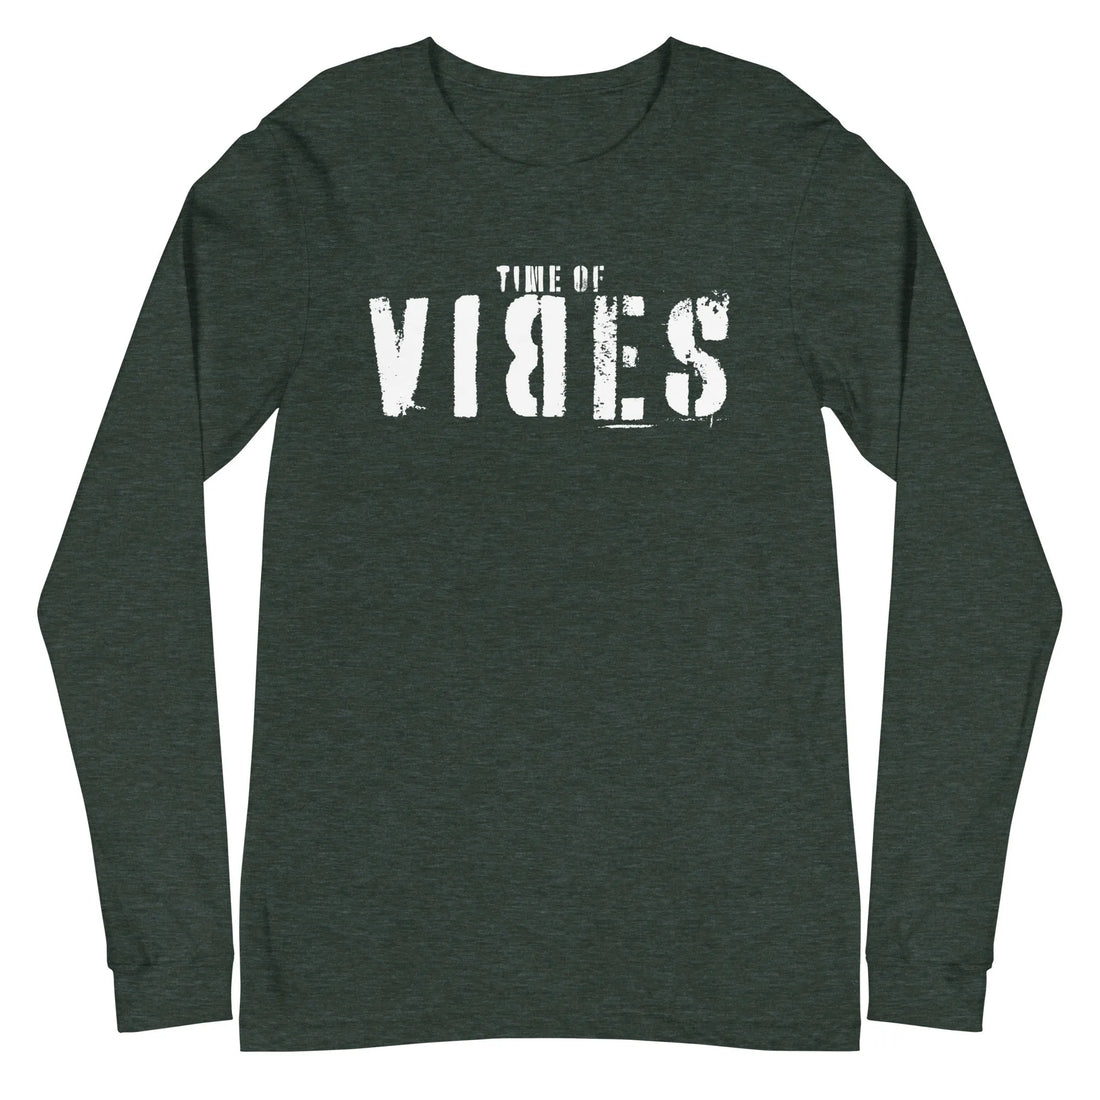 Langarm Baumwoll T-Shirt VIBES (Dunkelgrün/Weiß), Langarm T-Shirts, Time Of Vibes